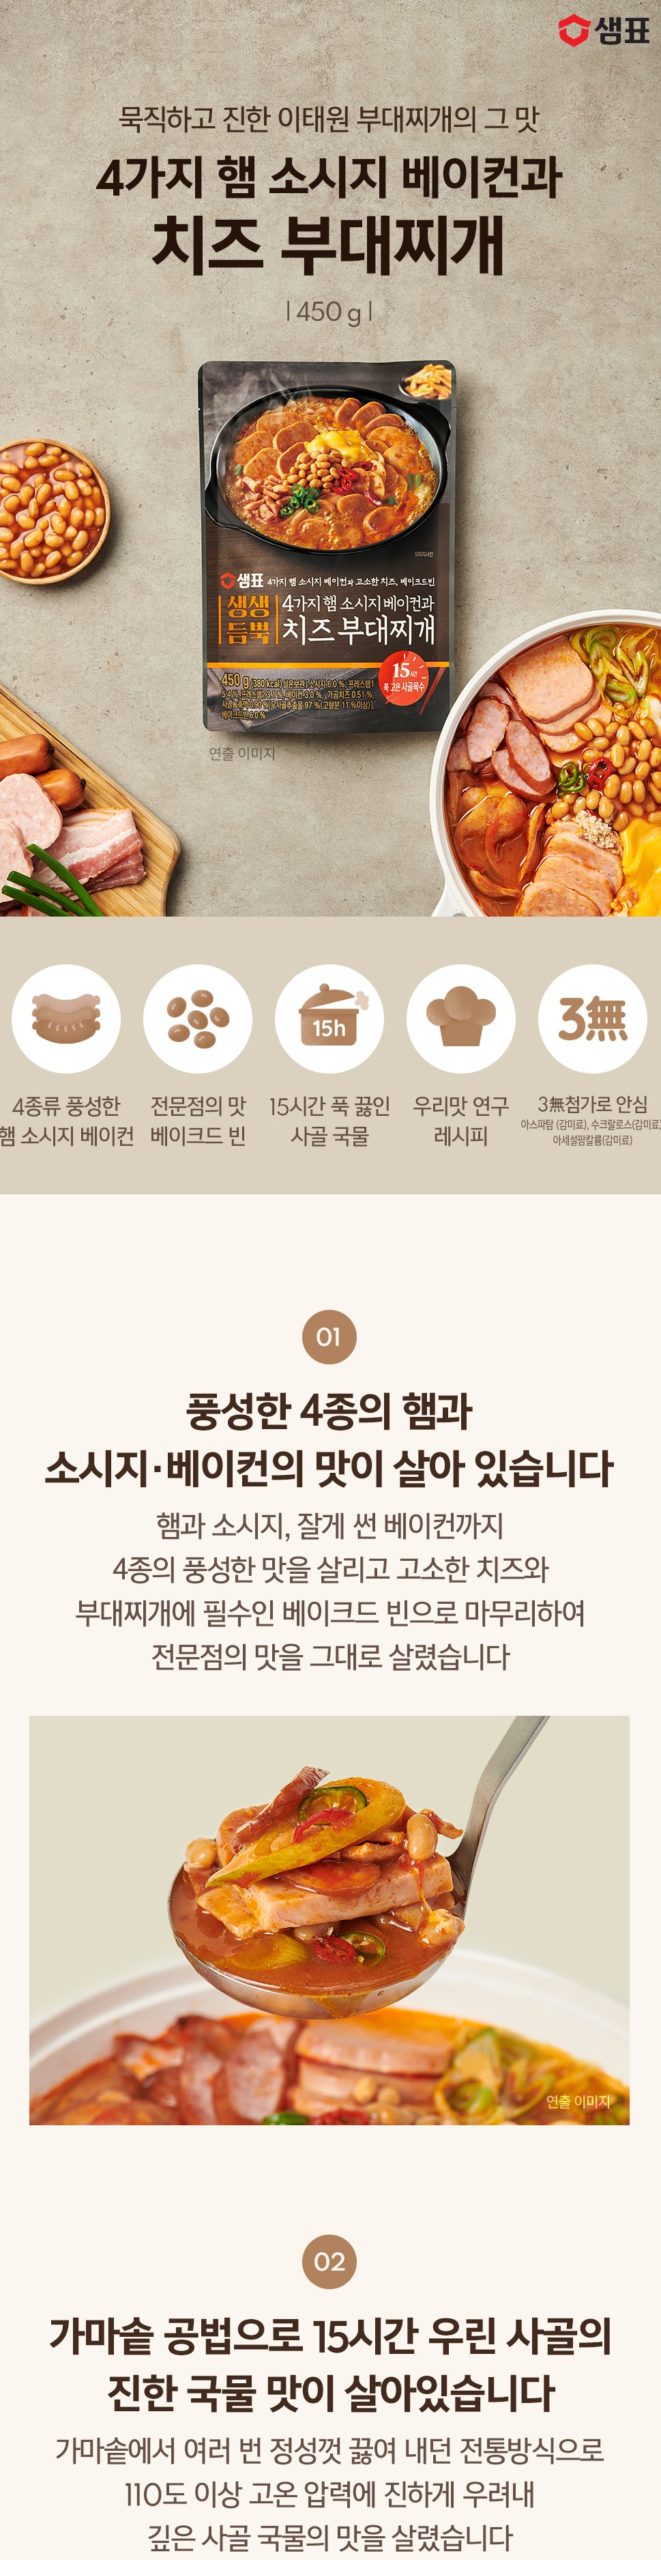 韓國食品-[膳府] 芝士部隊鍋 450g